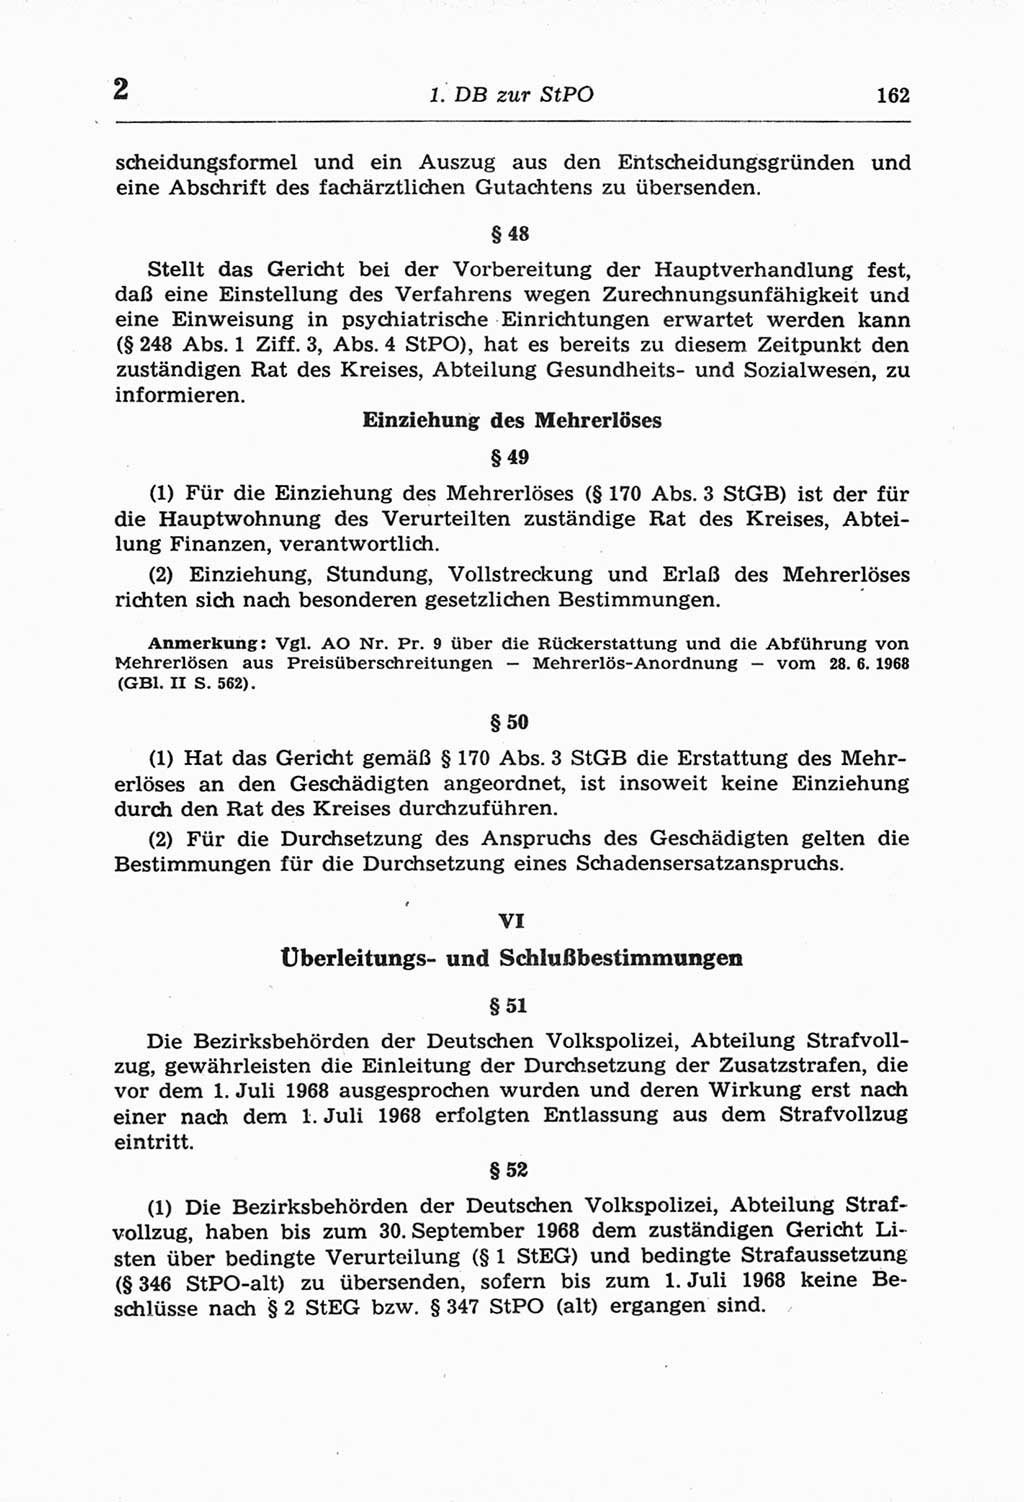 Strafprozeßordnung (StPO) der Deutschen Demokratischen Republik (DDR) und angrenzende Gesetze und Bestimmungen 1968, Seite 162 (StPO Ges. Bstgn. DDR 1968, S. 162)